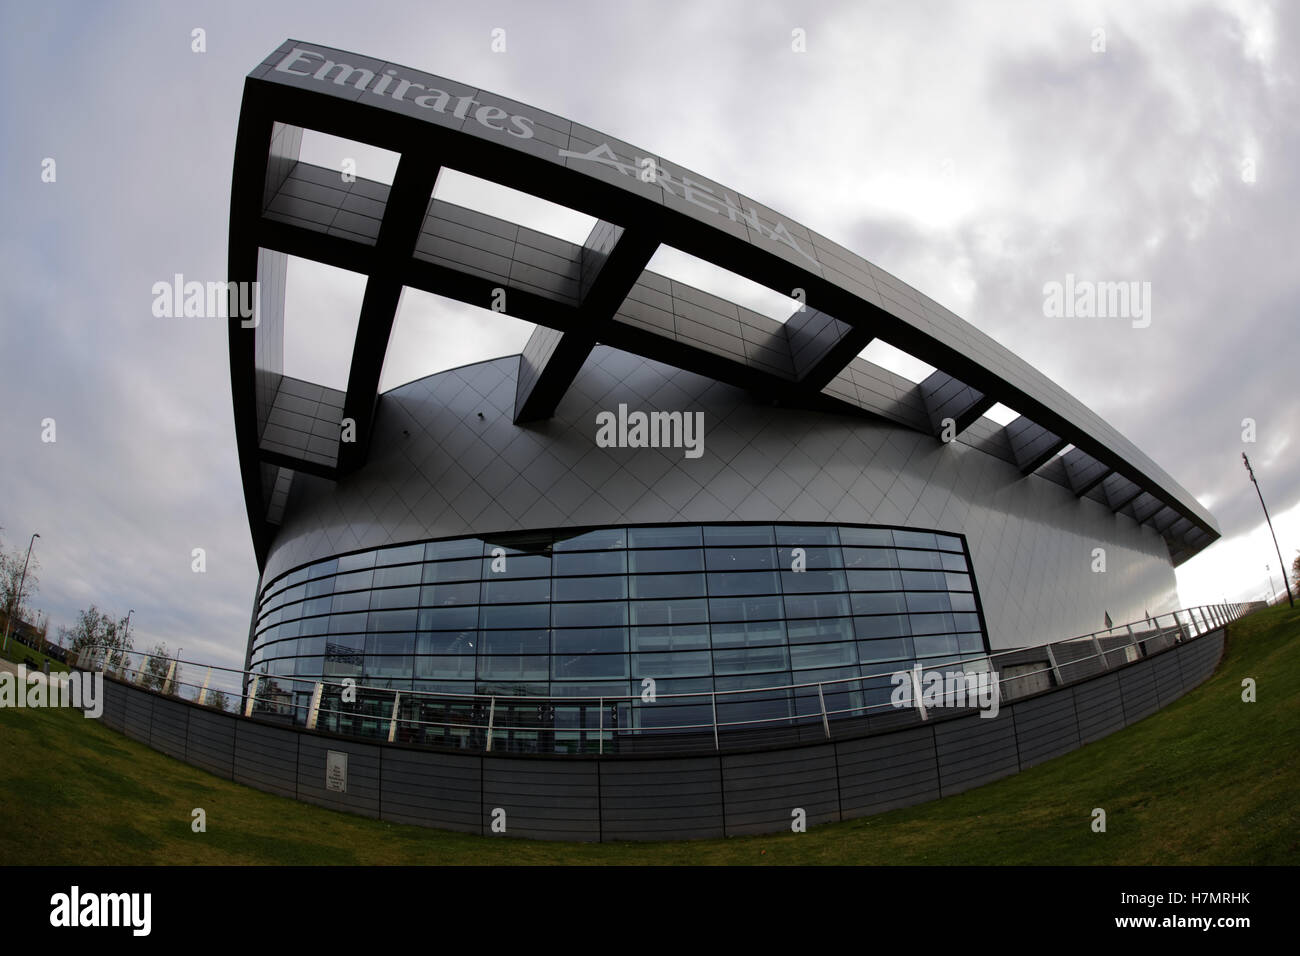 Emiratos arena logo de Glasgow Foto de stock